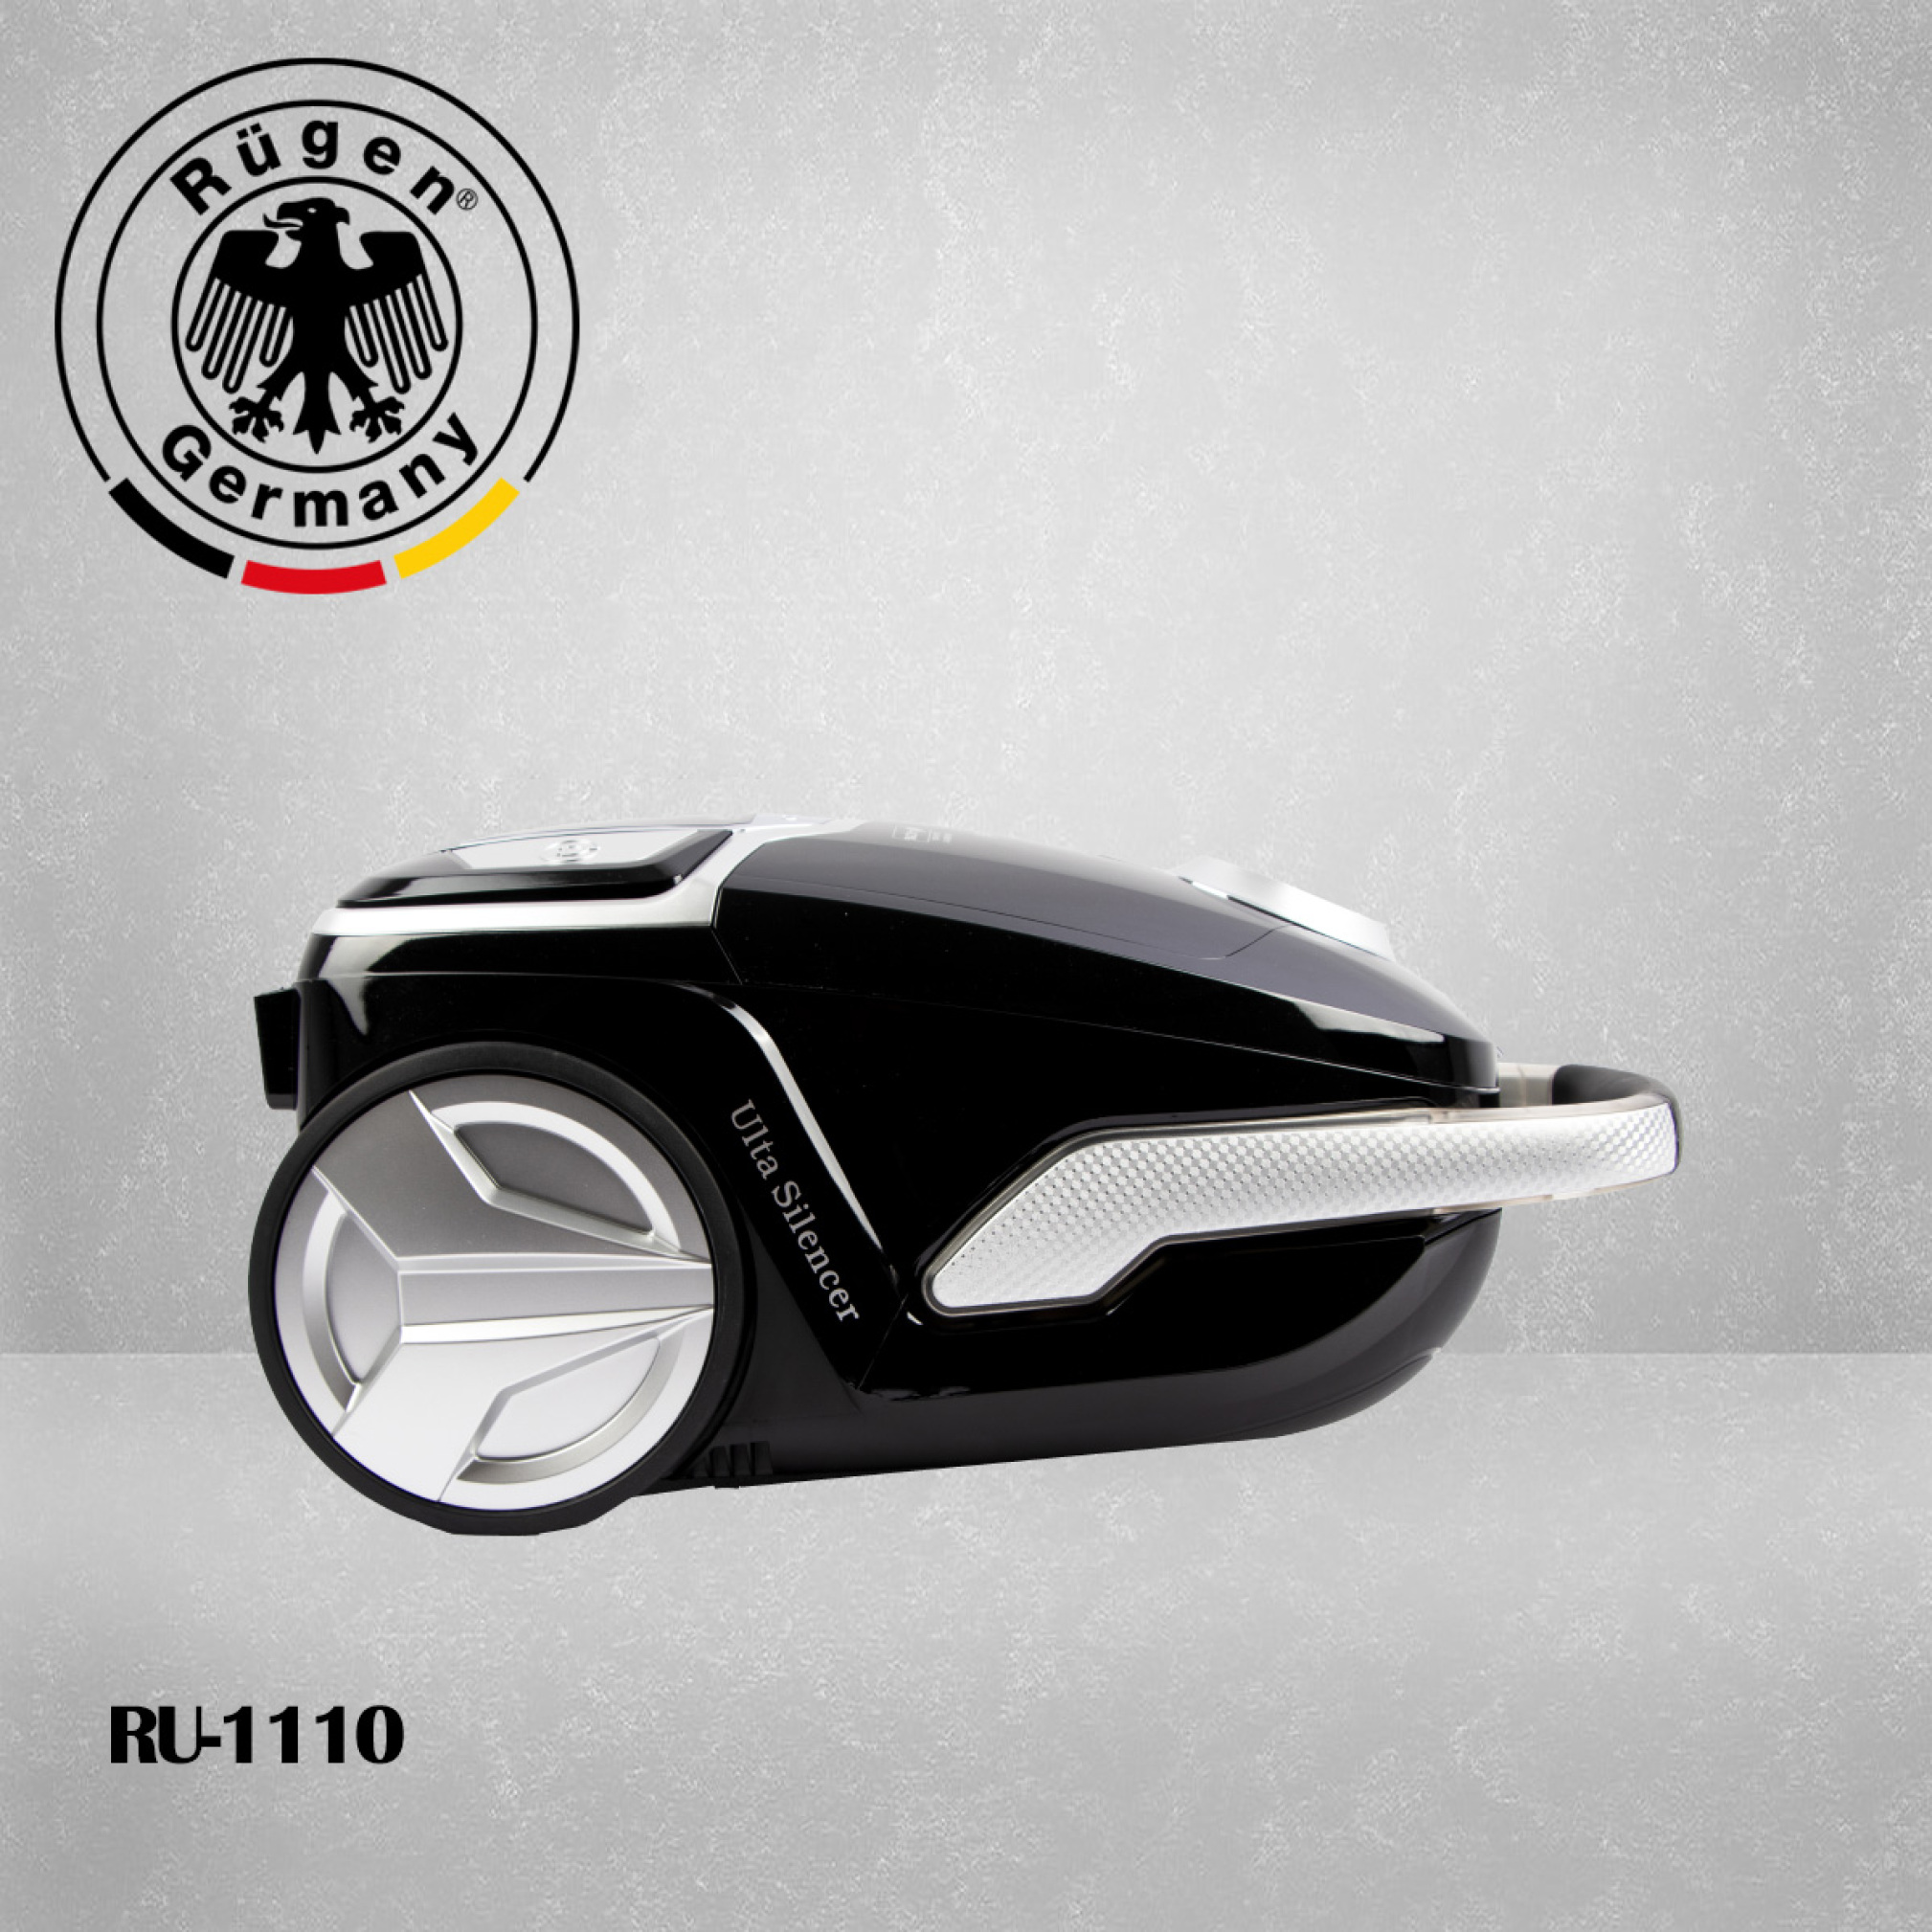  جاروبرقی 2400 وات برند روگن آلمان مدل Rugen RU-1110 